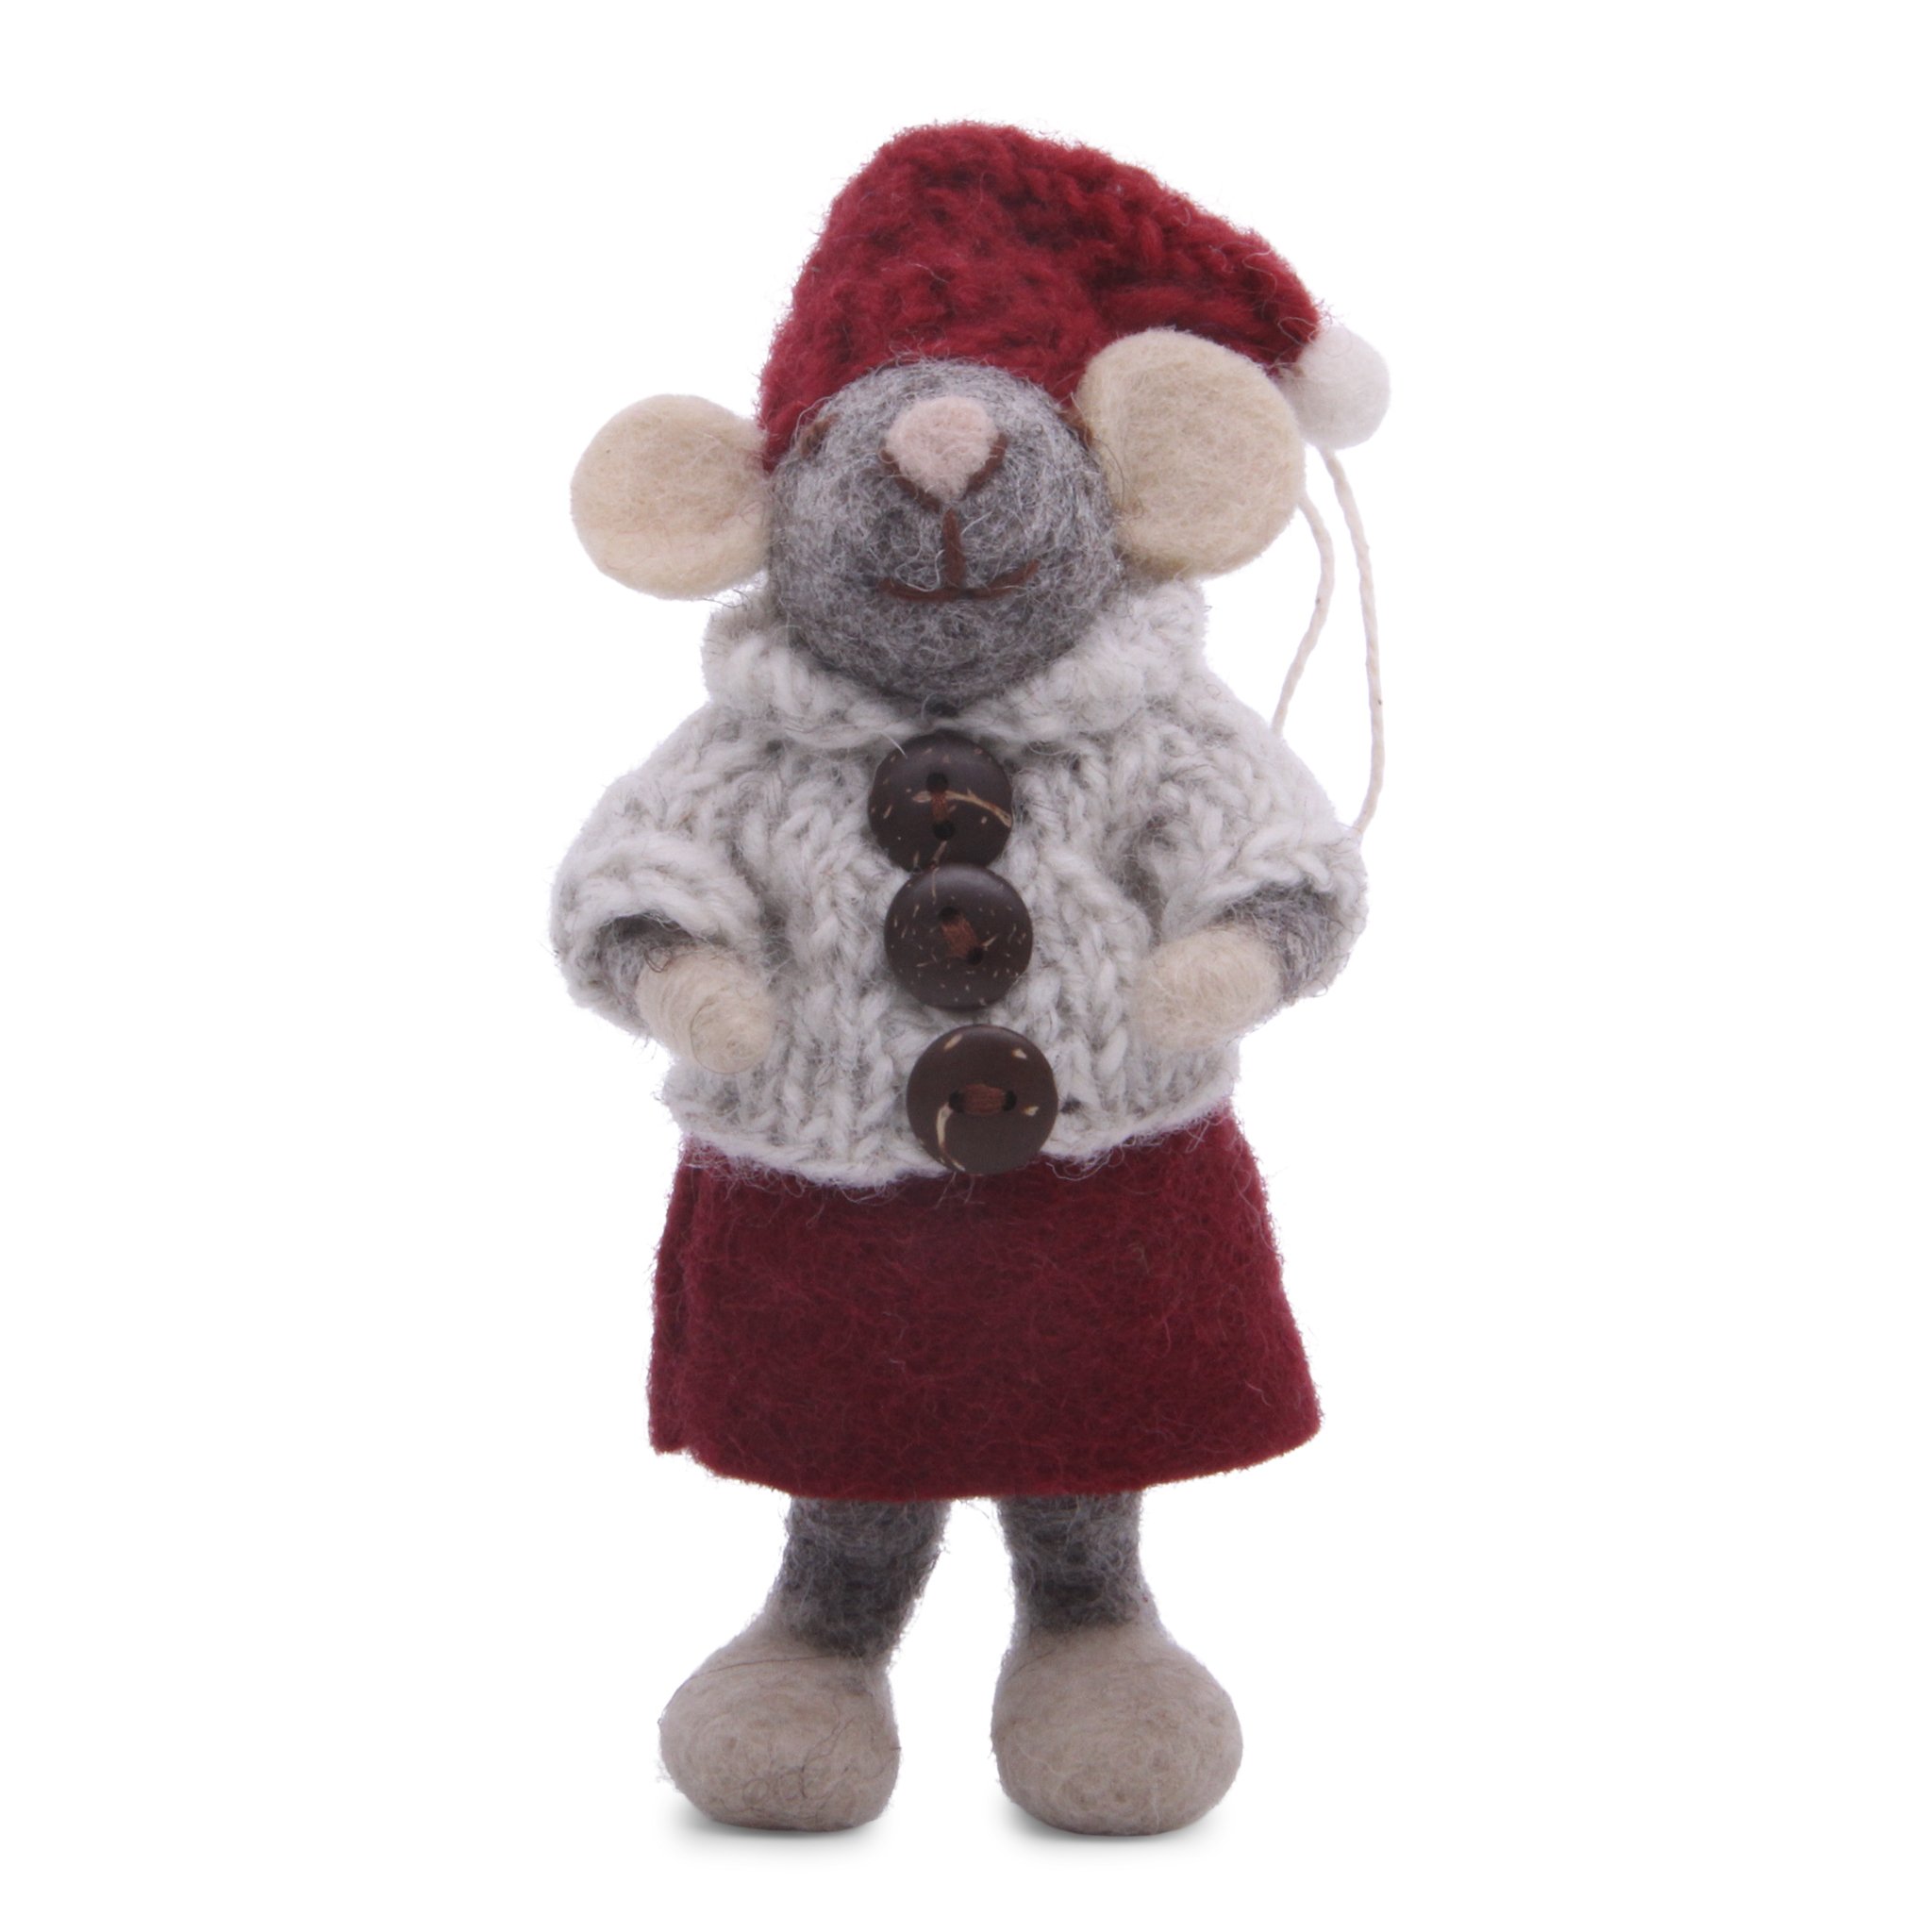 Filtet gr mus med rd kjole og gr trje fra Gry & Sif, 12 cm